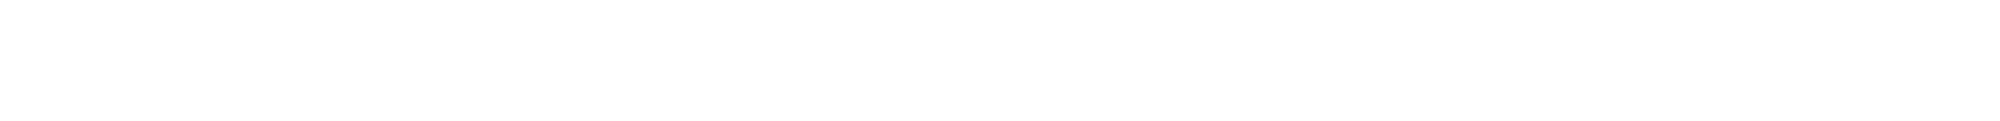 Flydesk-espacio-logo